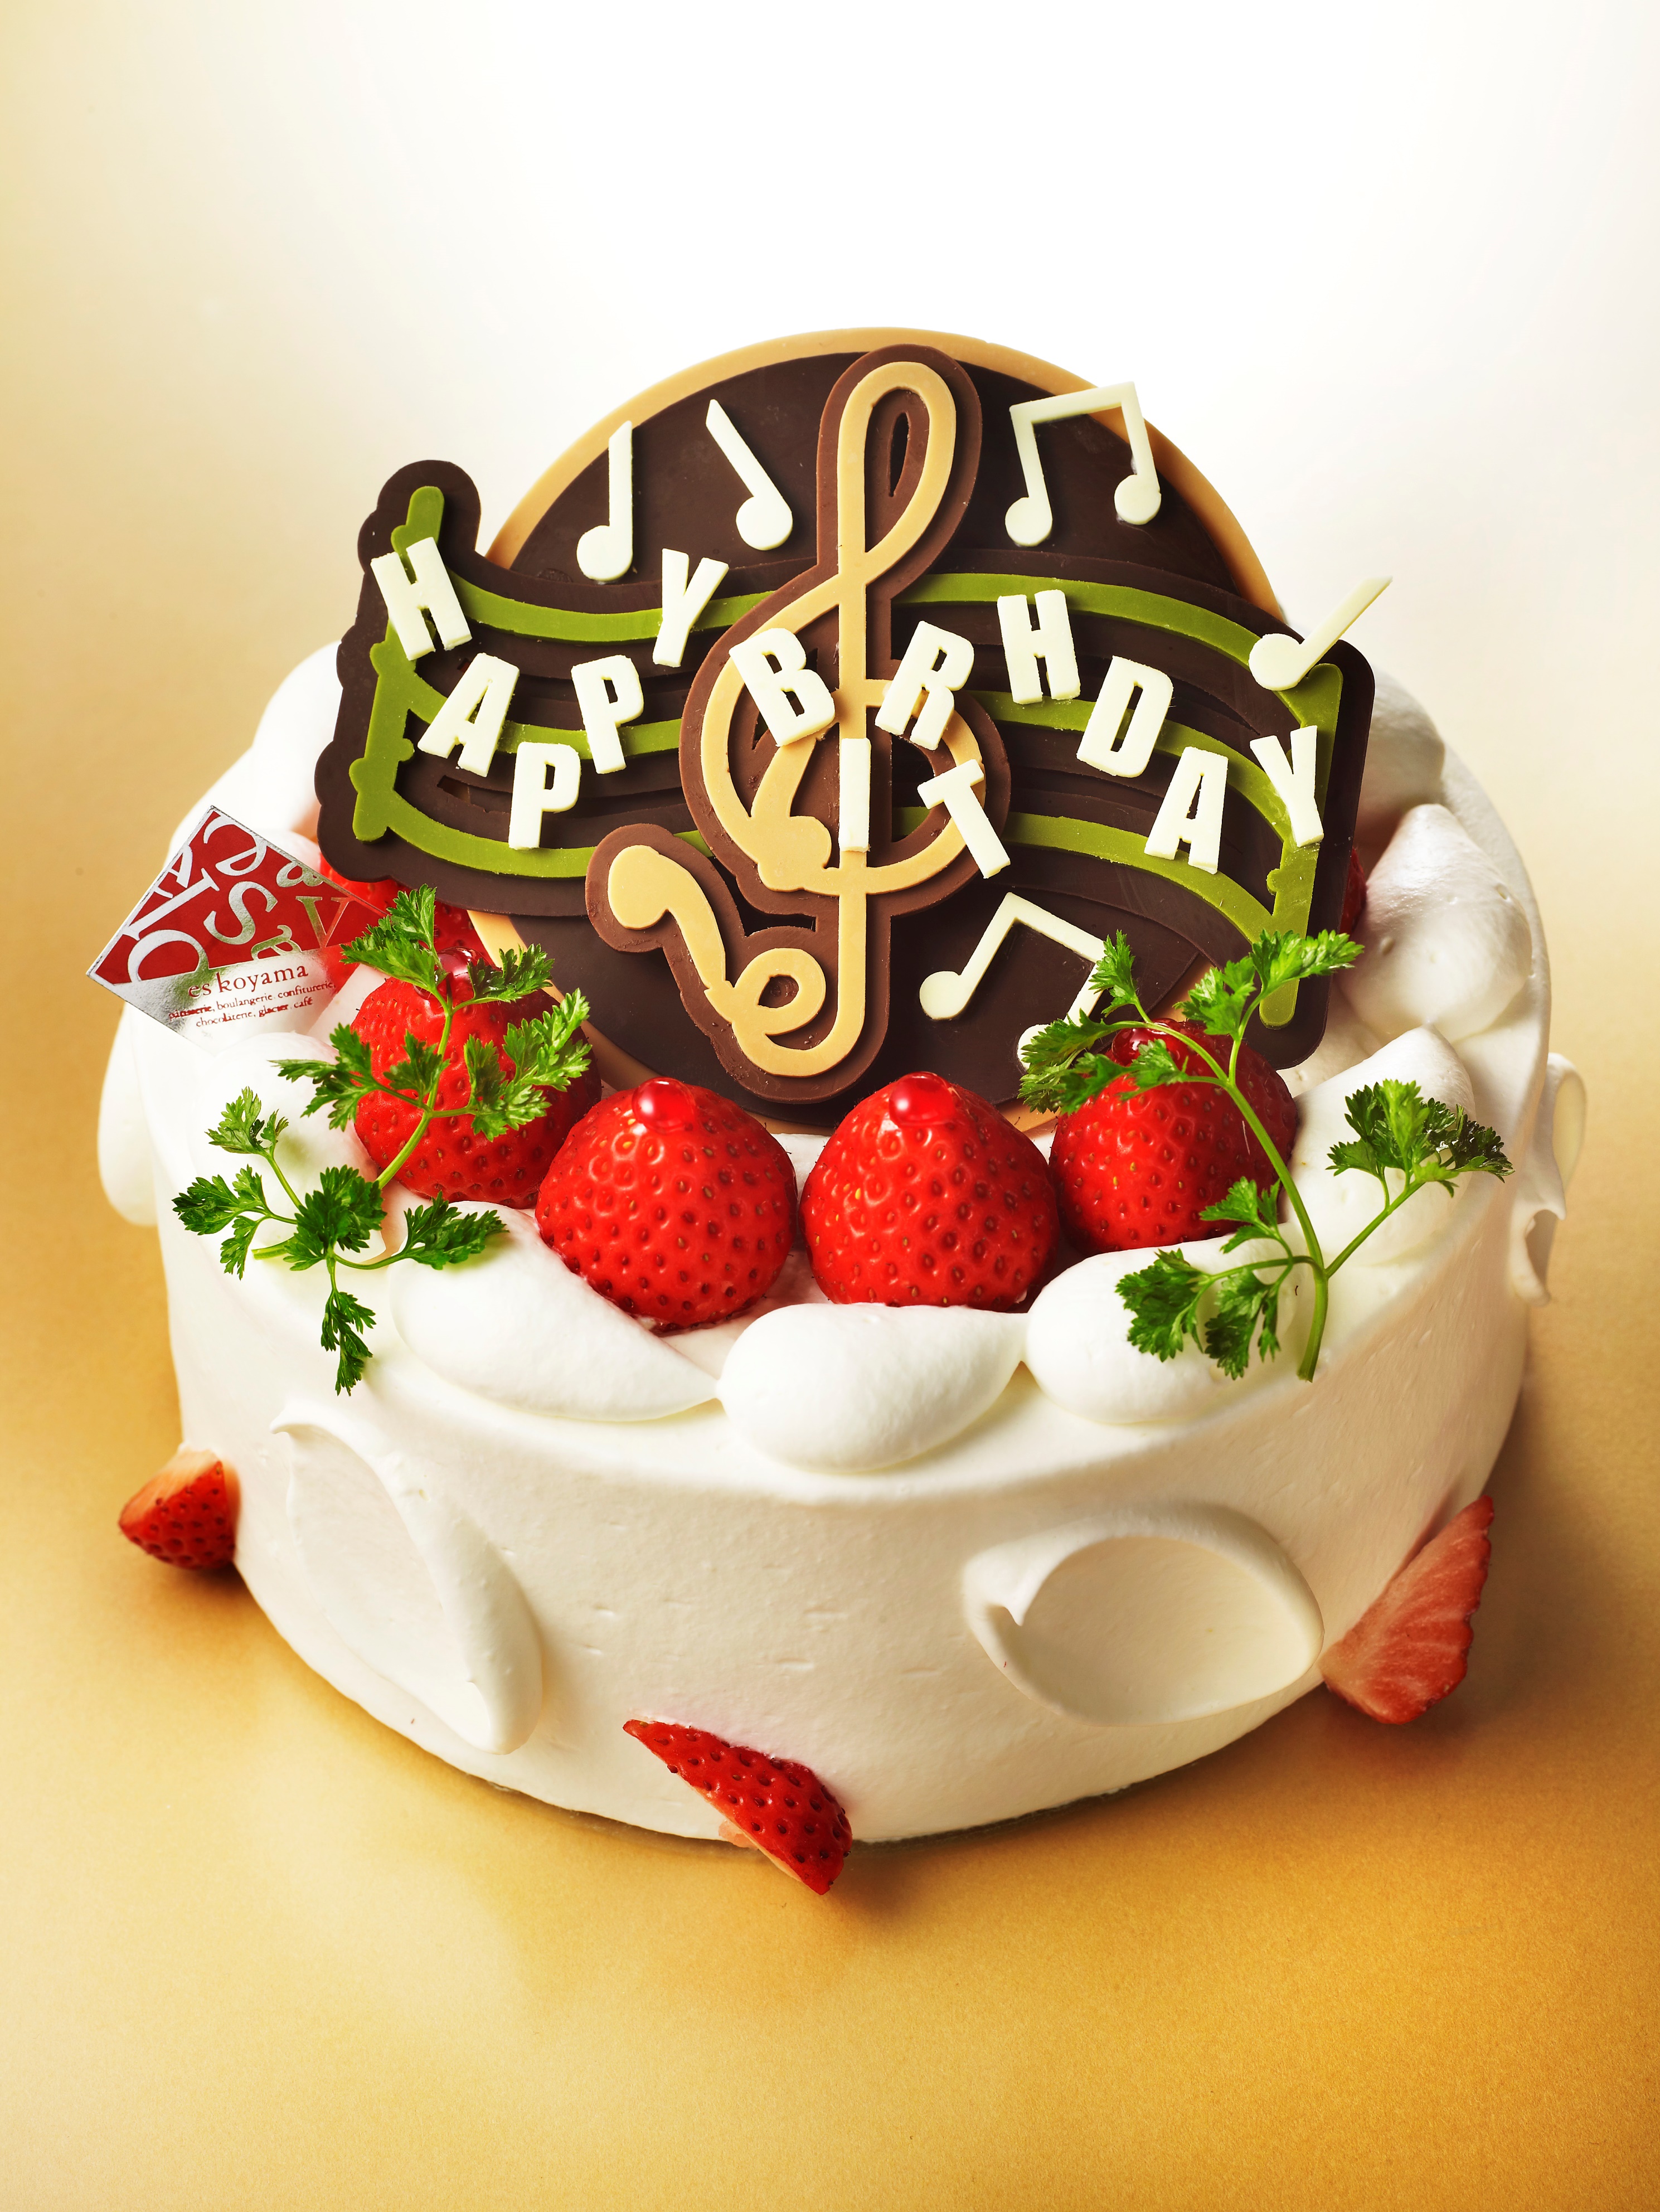 11月13日にエスコヤマにデコレーションケーキ専門店 ファンタジー ディレクター が誕生 関西スイーツ